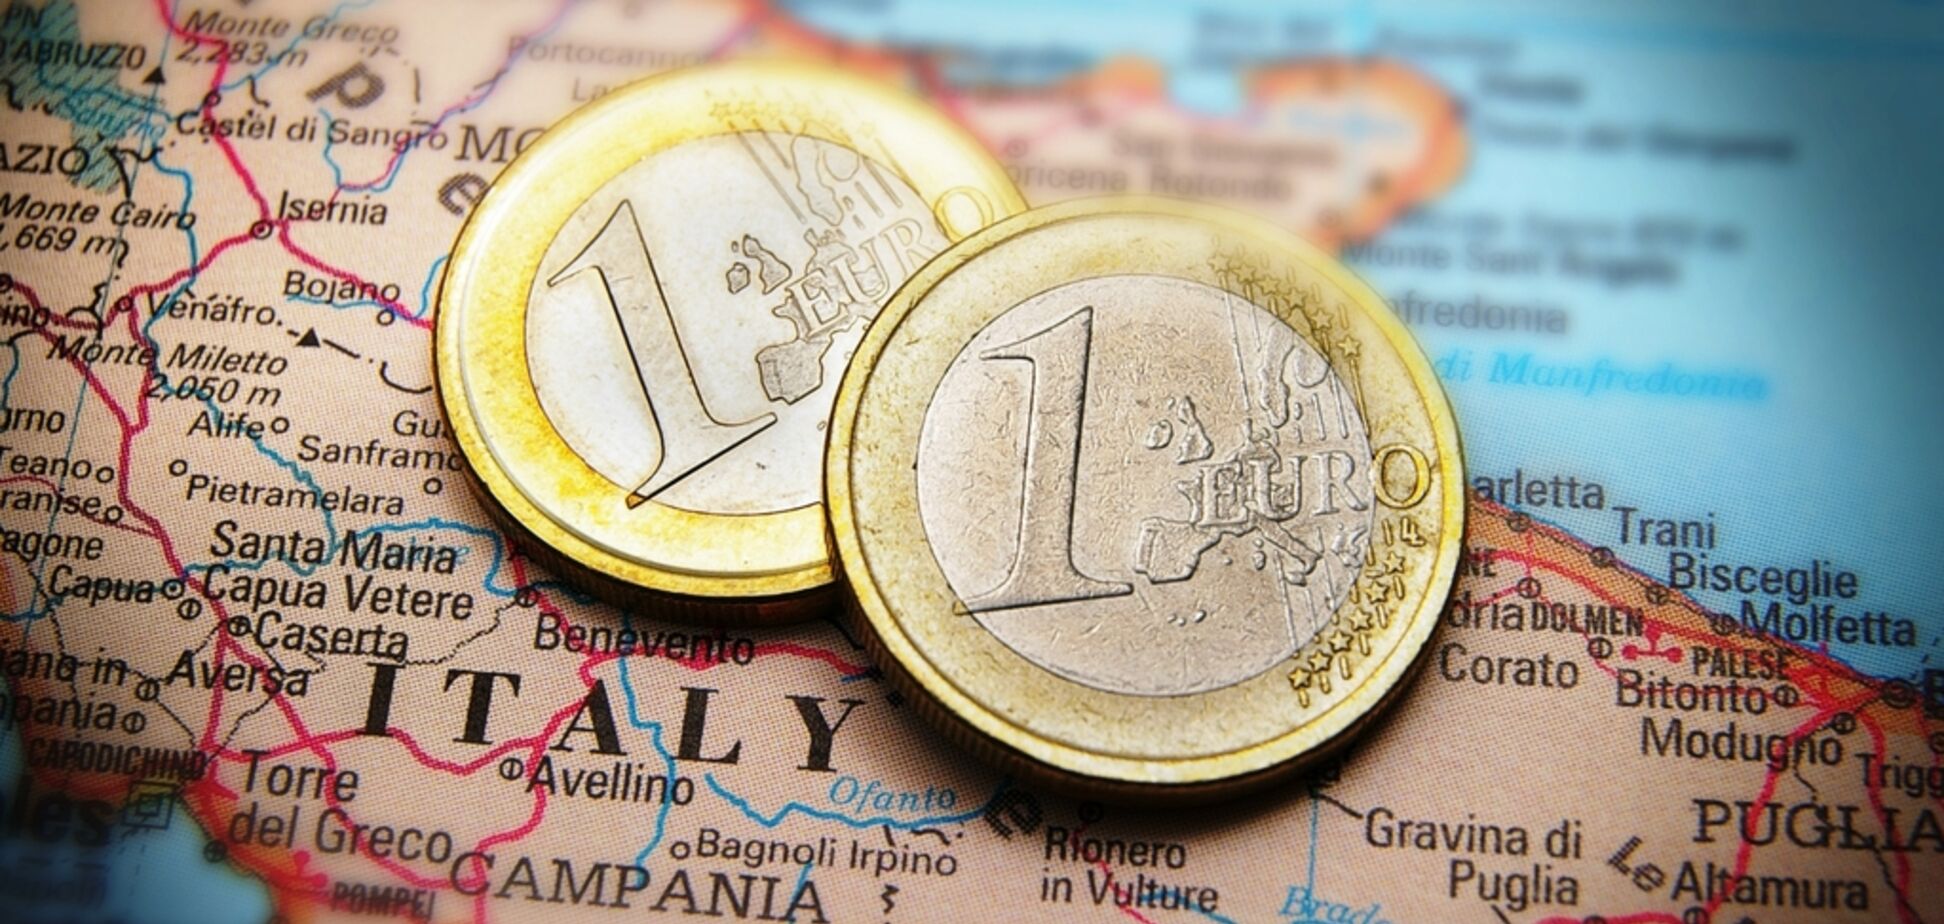 Италии сделали жесткое предупреждение из-за огромного долга: что известно